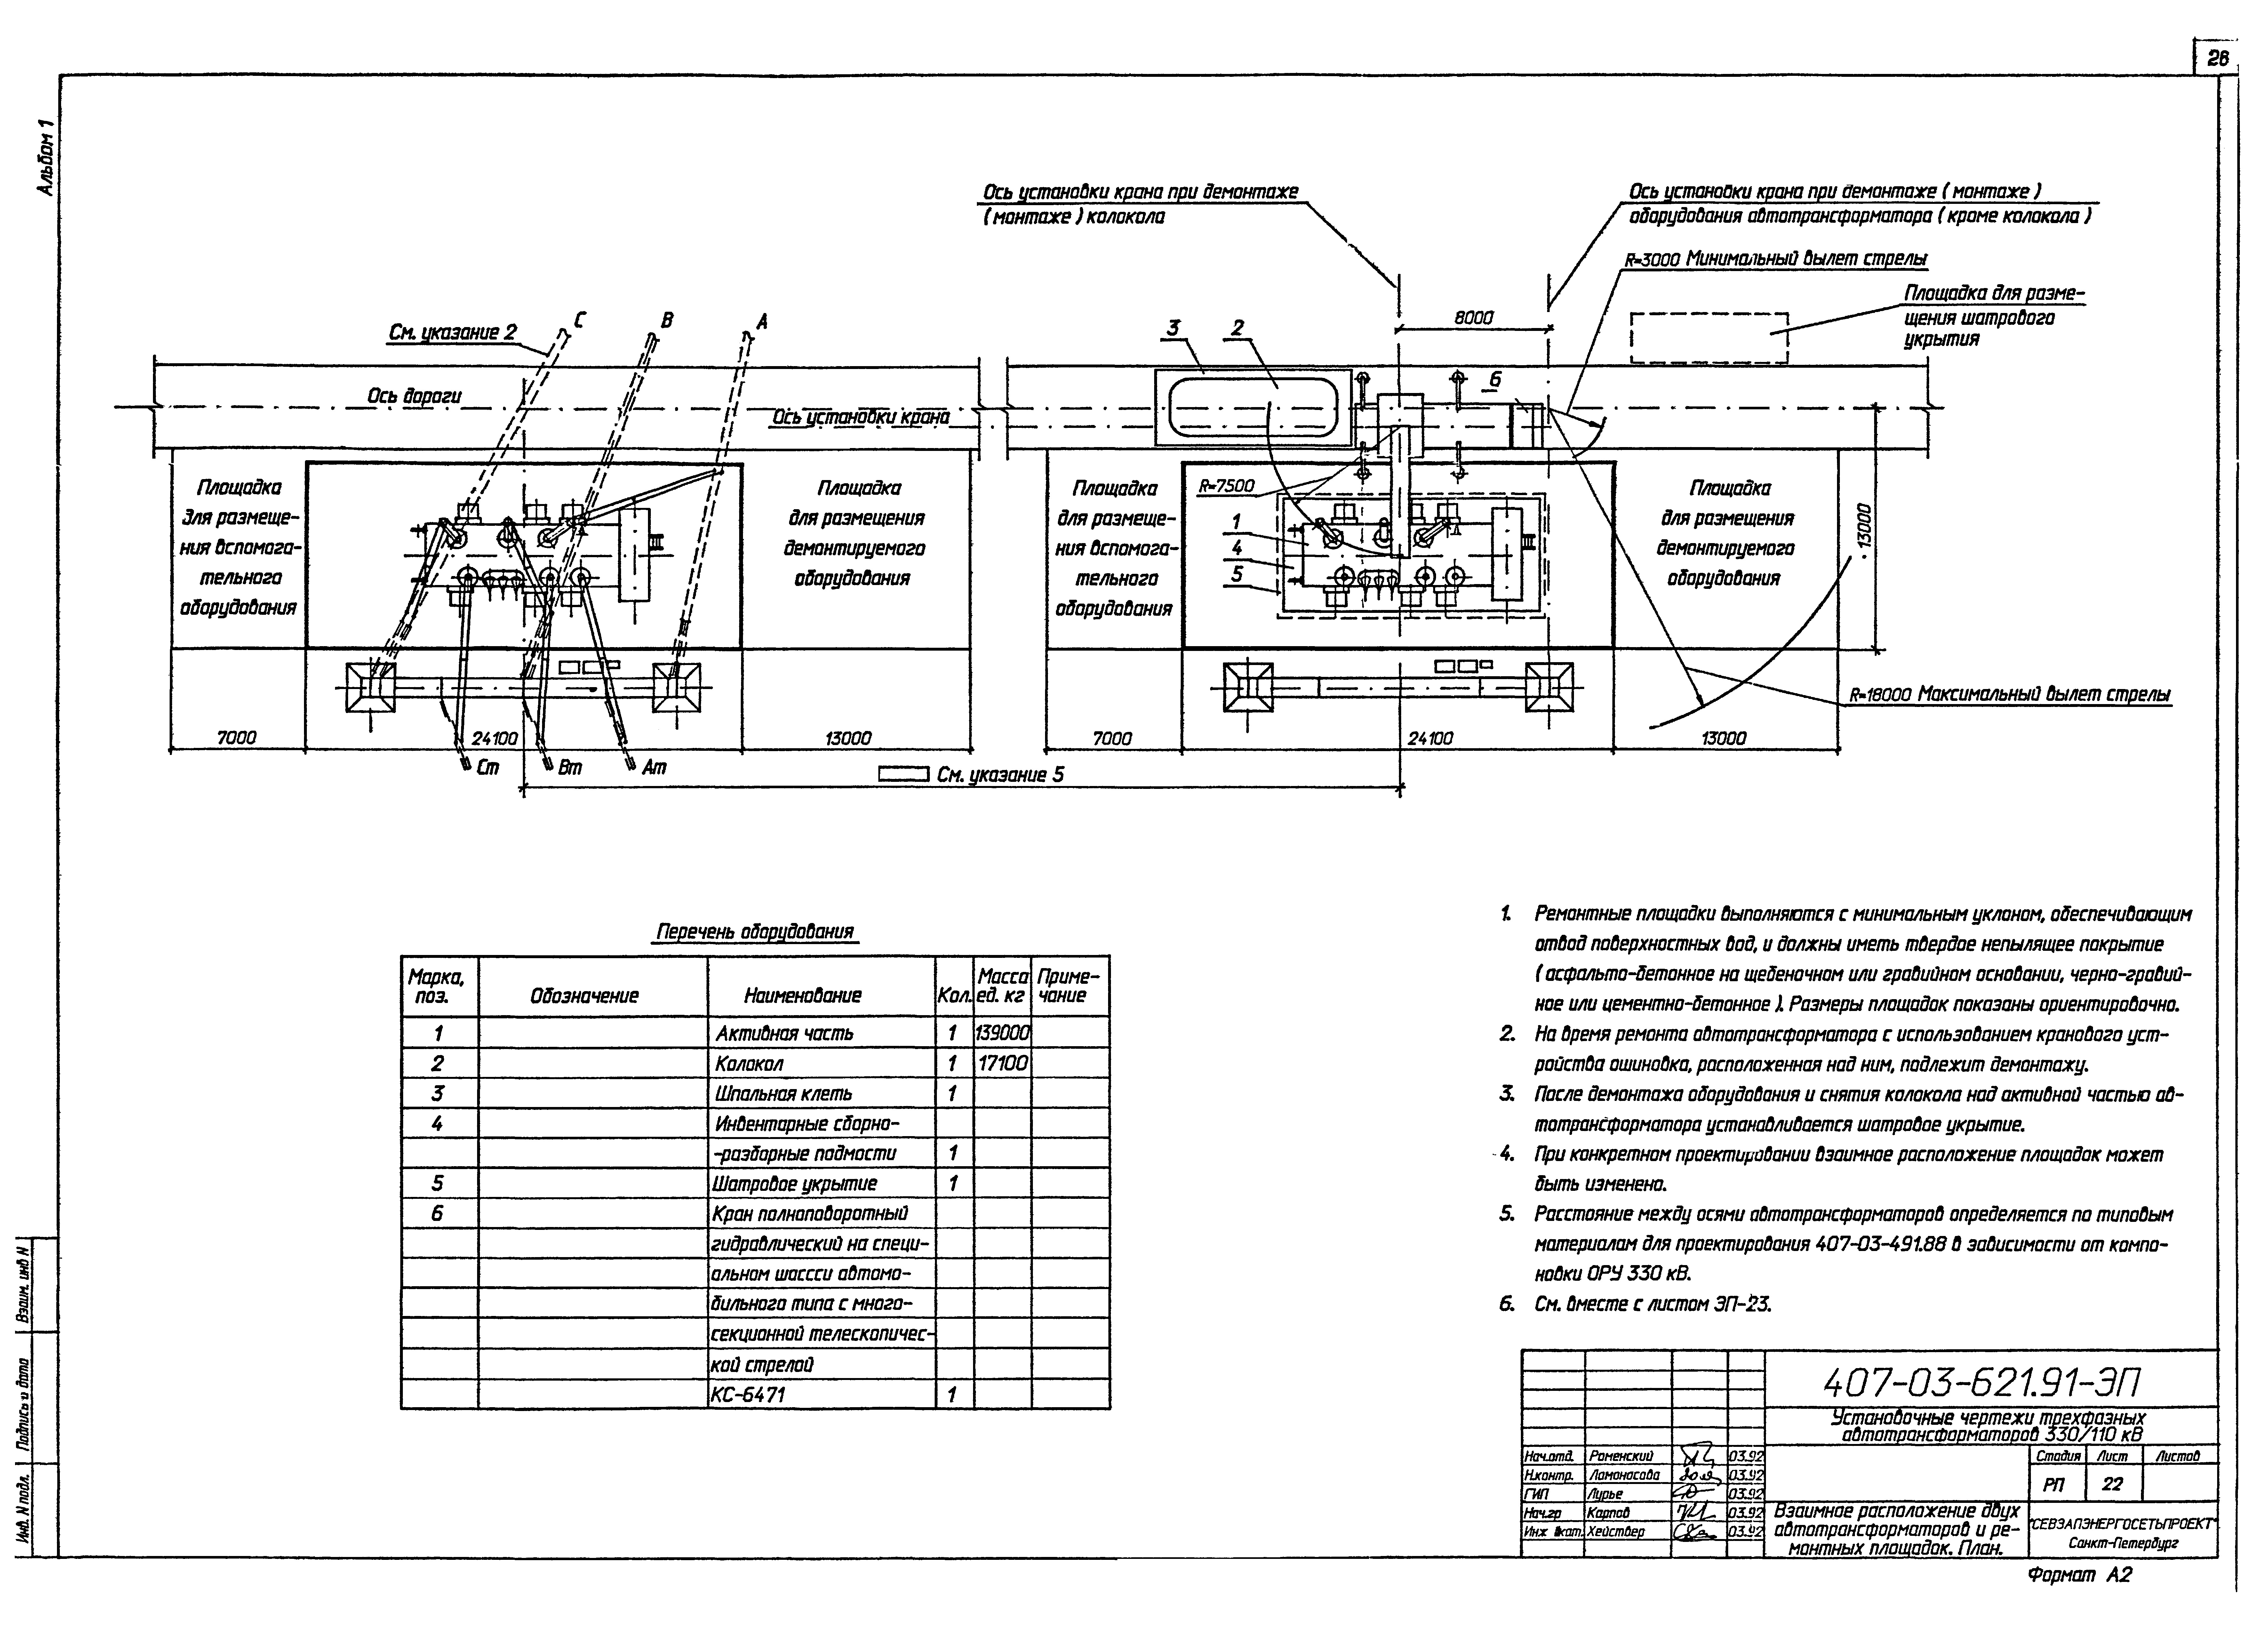 Типовые материалы для проектирования 407-03-621.91